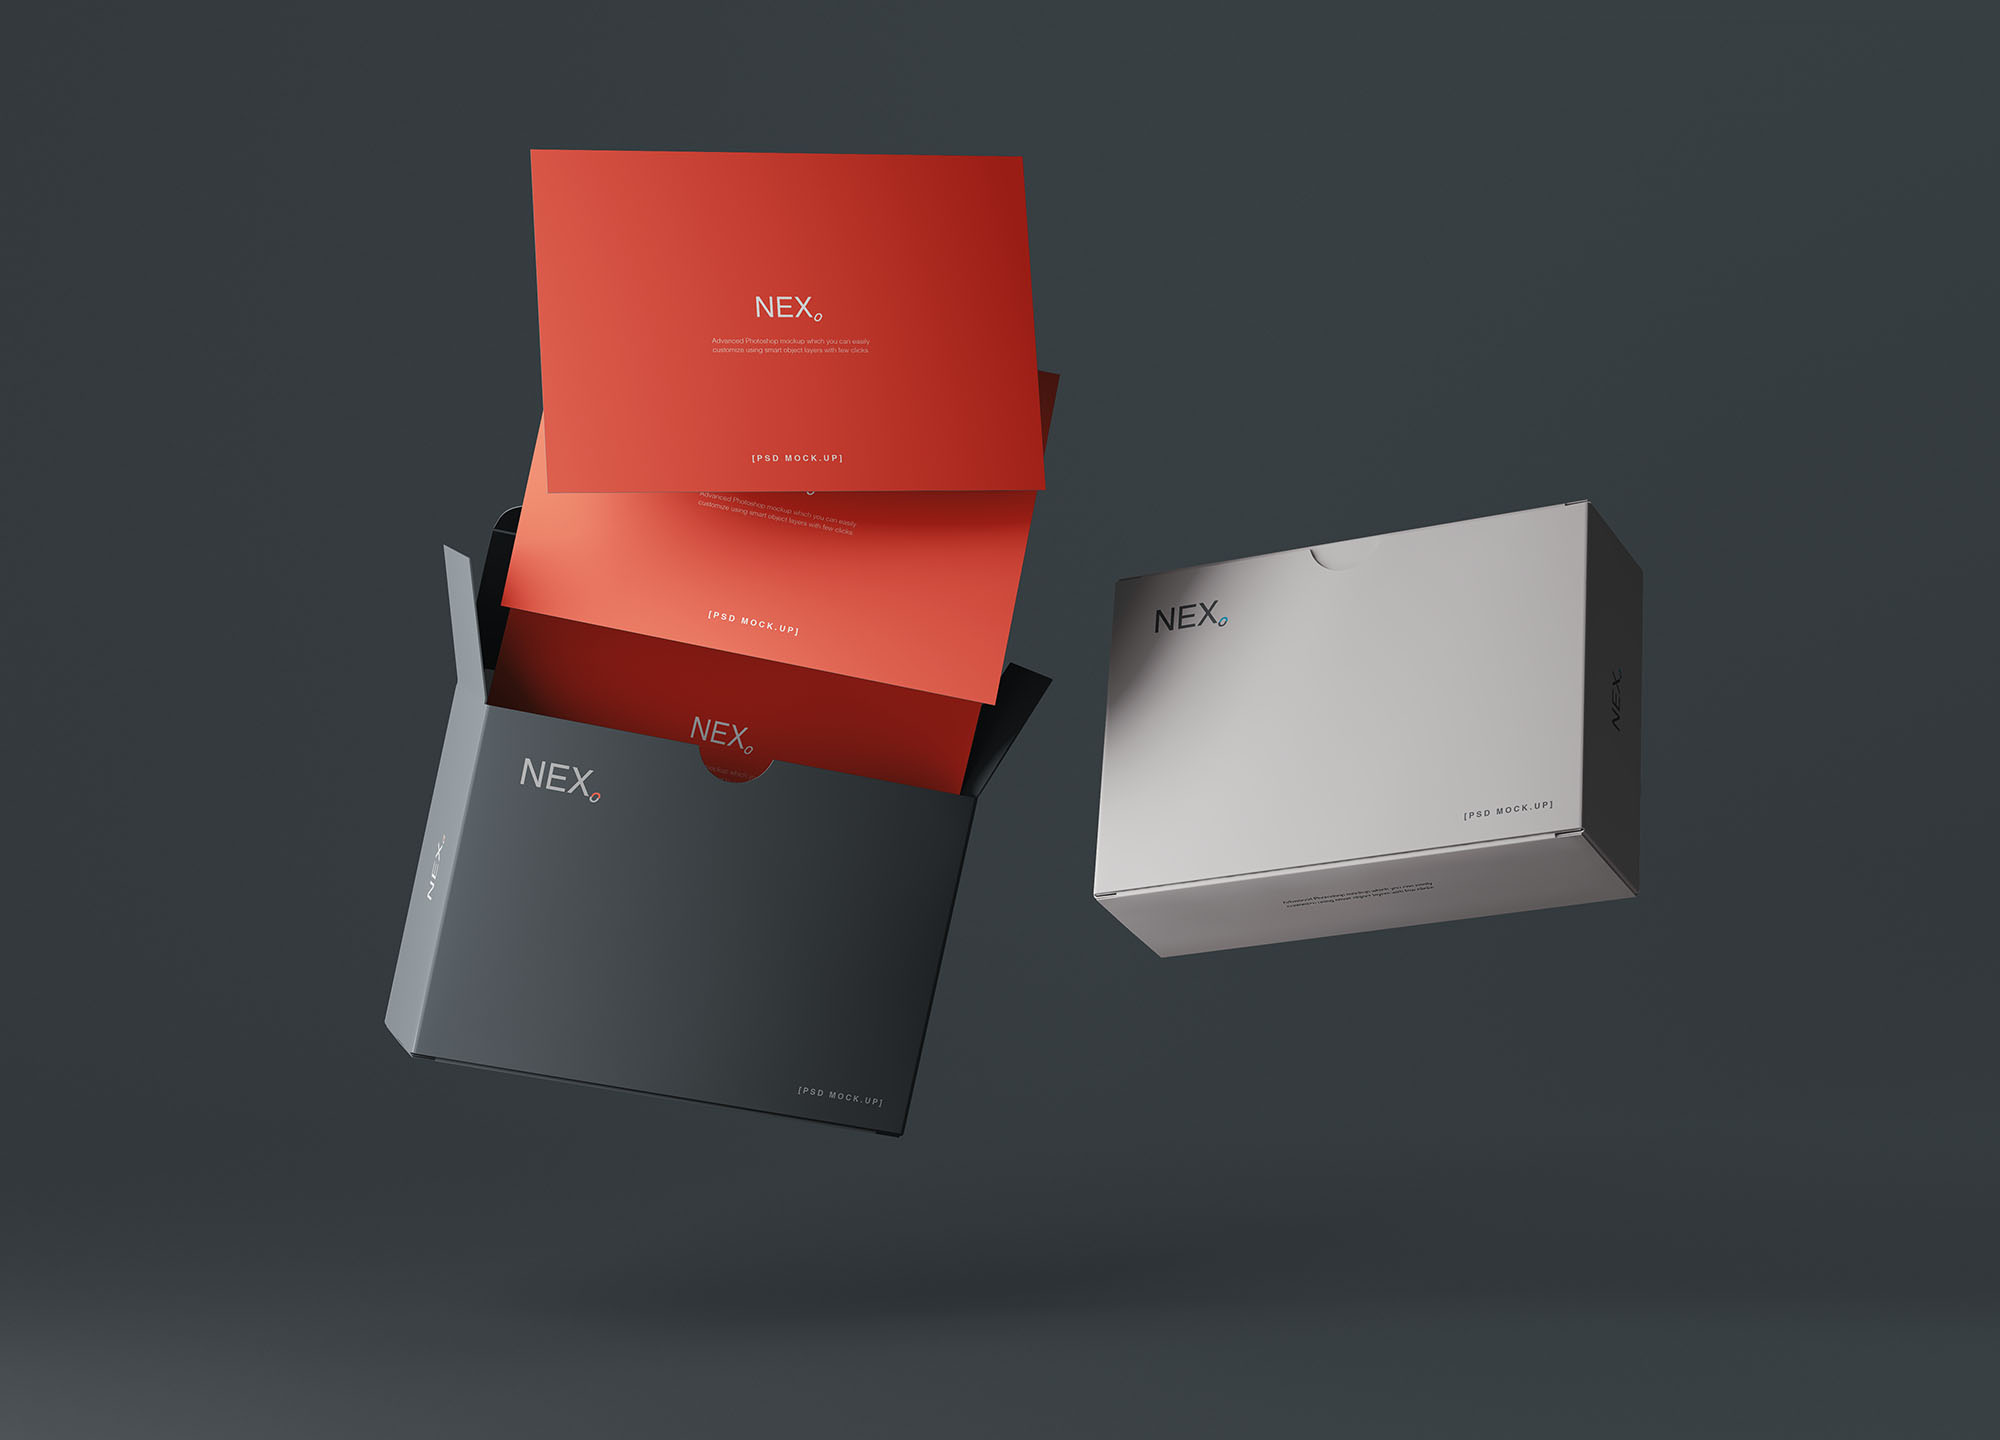 卡片包装盒外观设计效果图素材中国精选 Card Box Mockup插图(7)